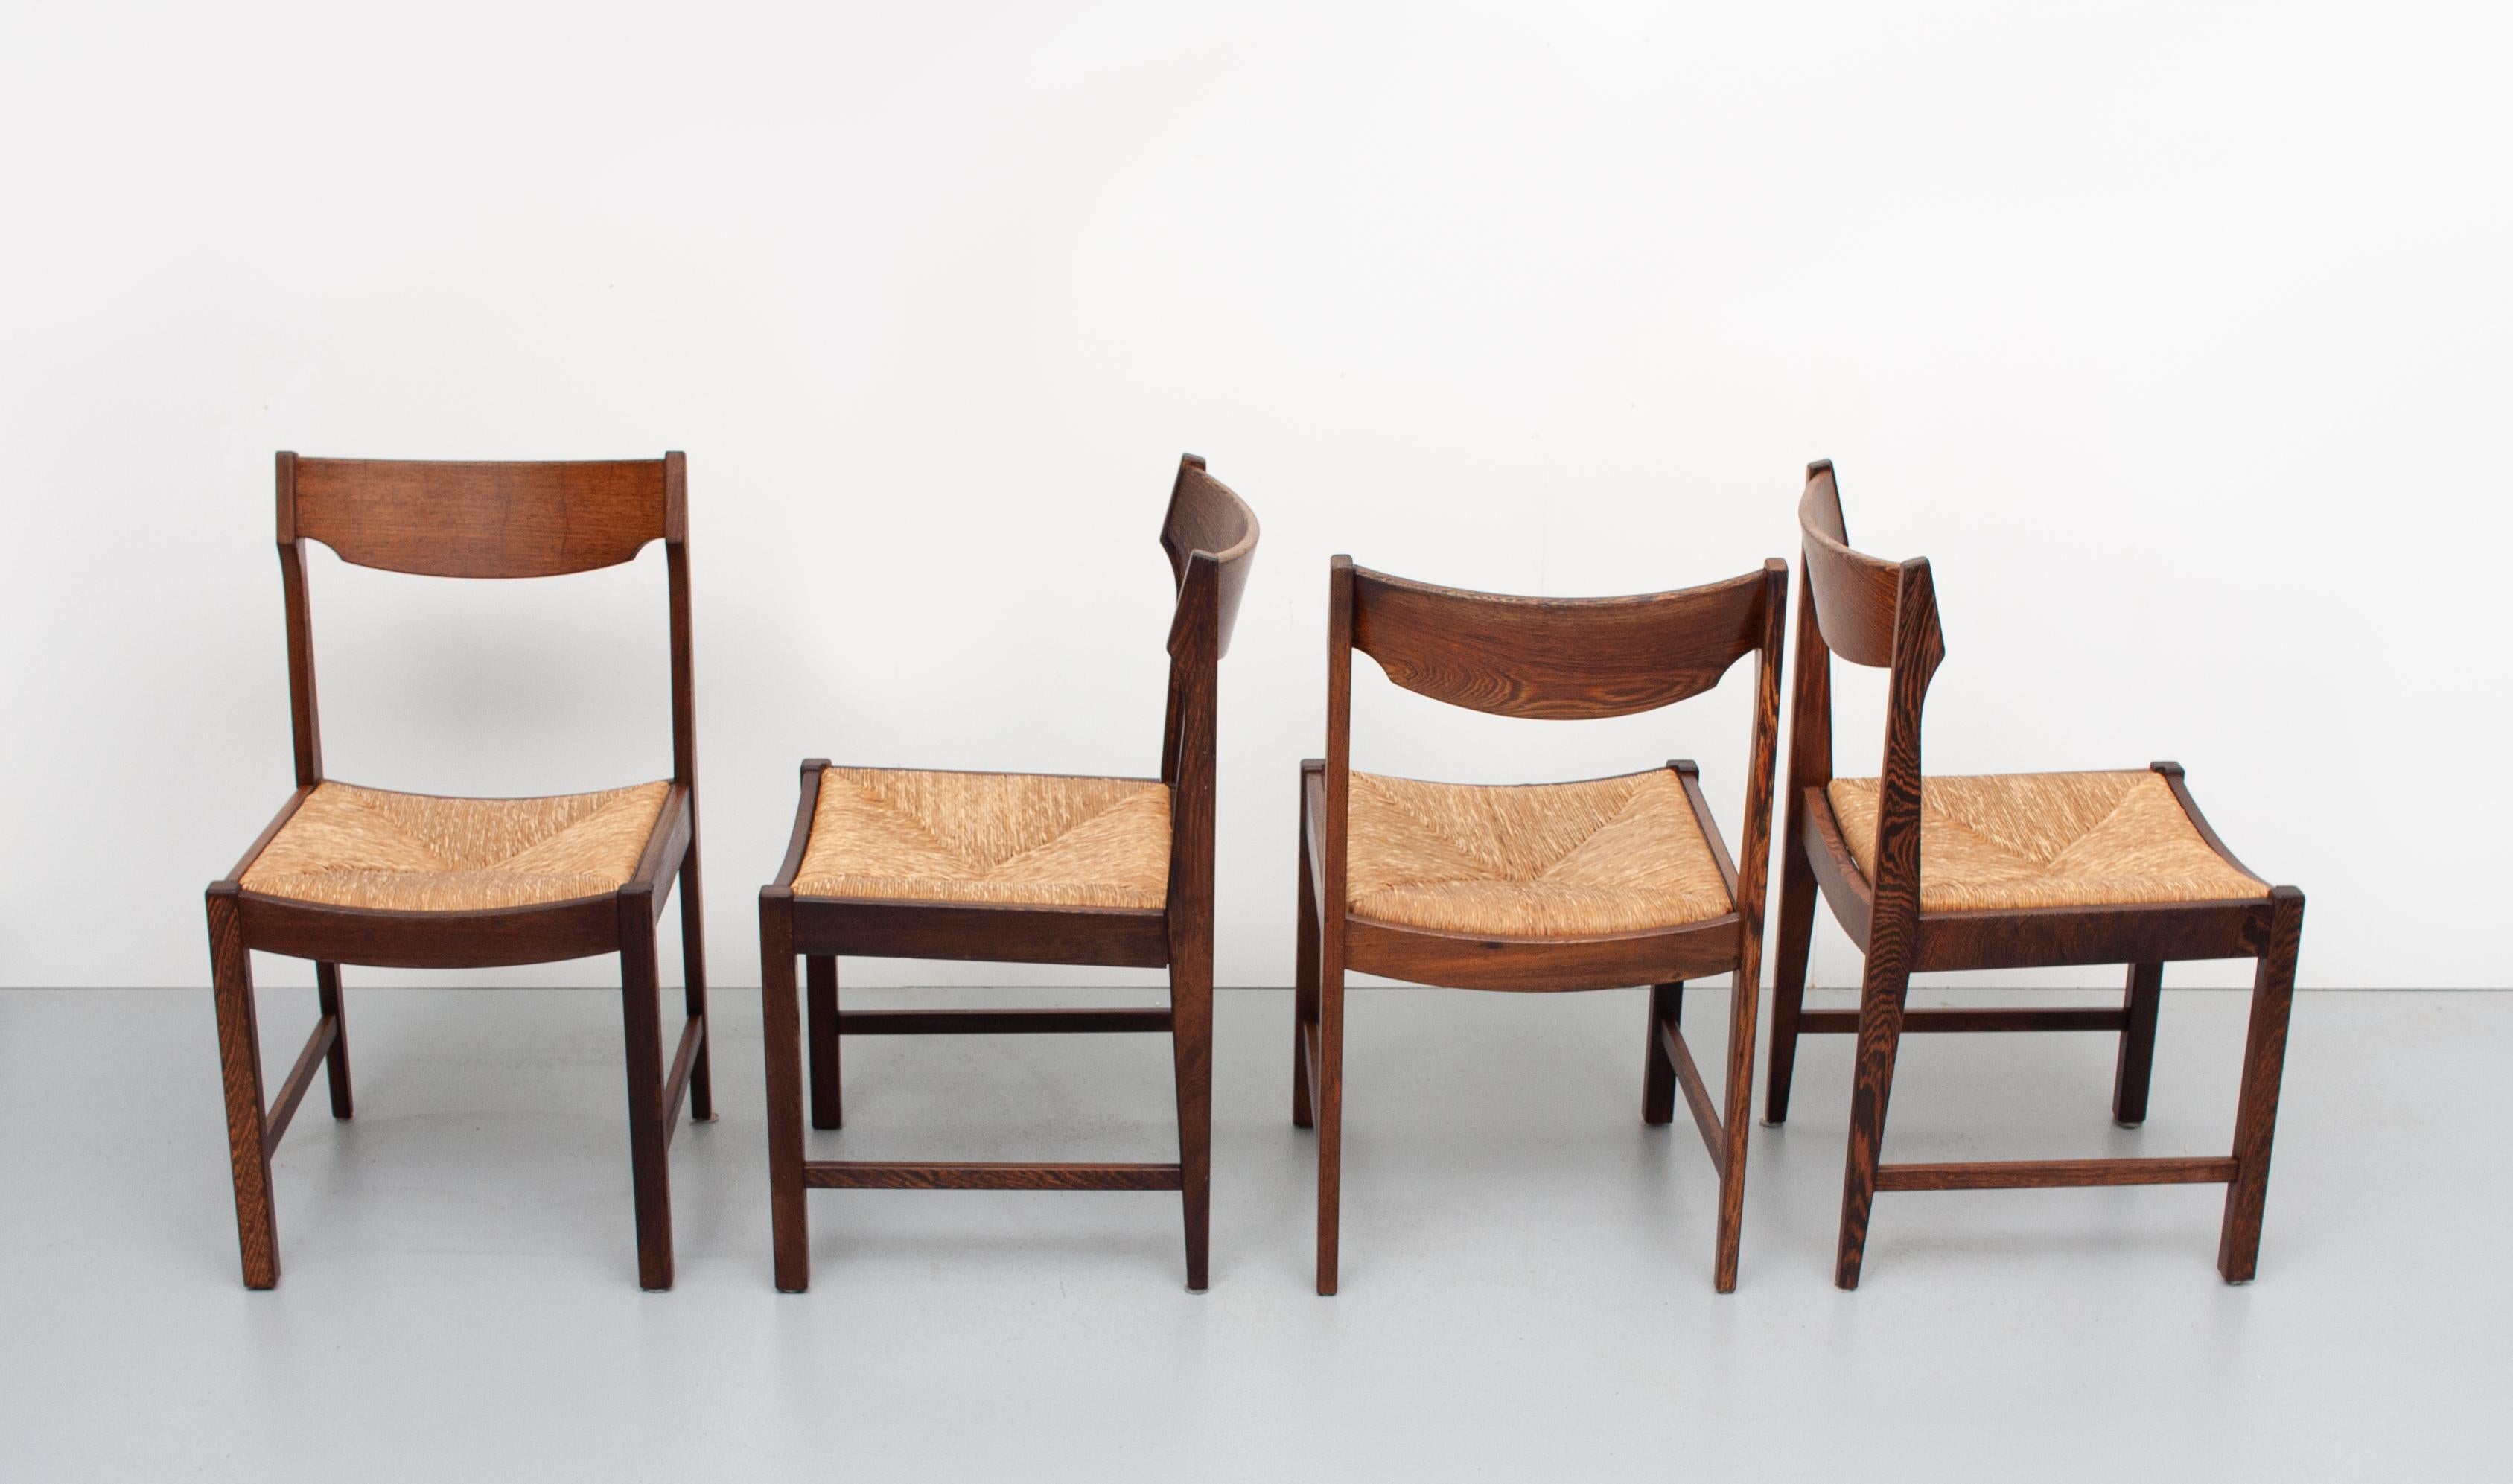 4 chaises de salle à manger. Cadre en wengé massif, livré avec un siège en rotin. Très belles chaises de forme organique,
1960s. Holland Martin Visser. Bon état.